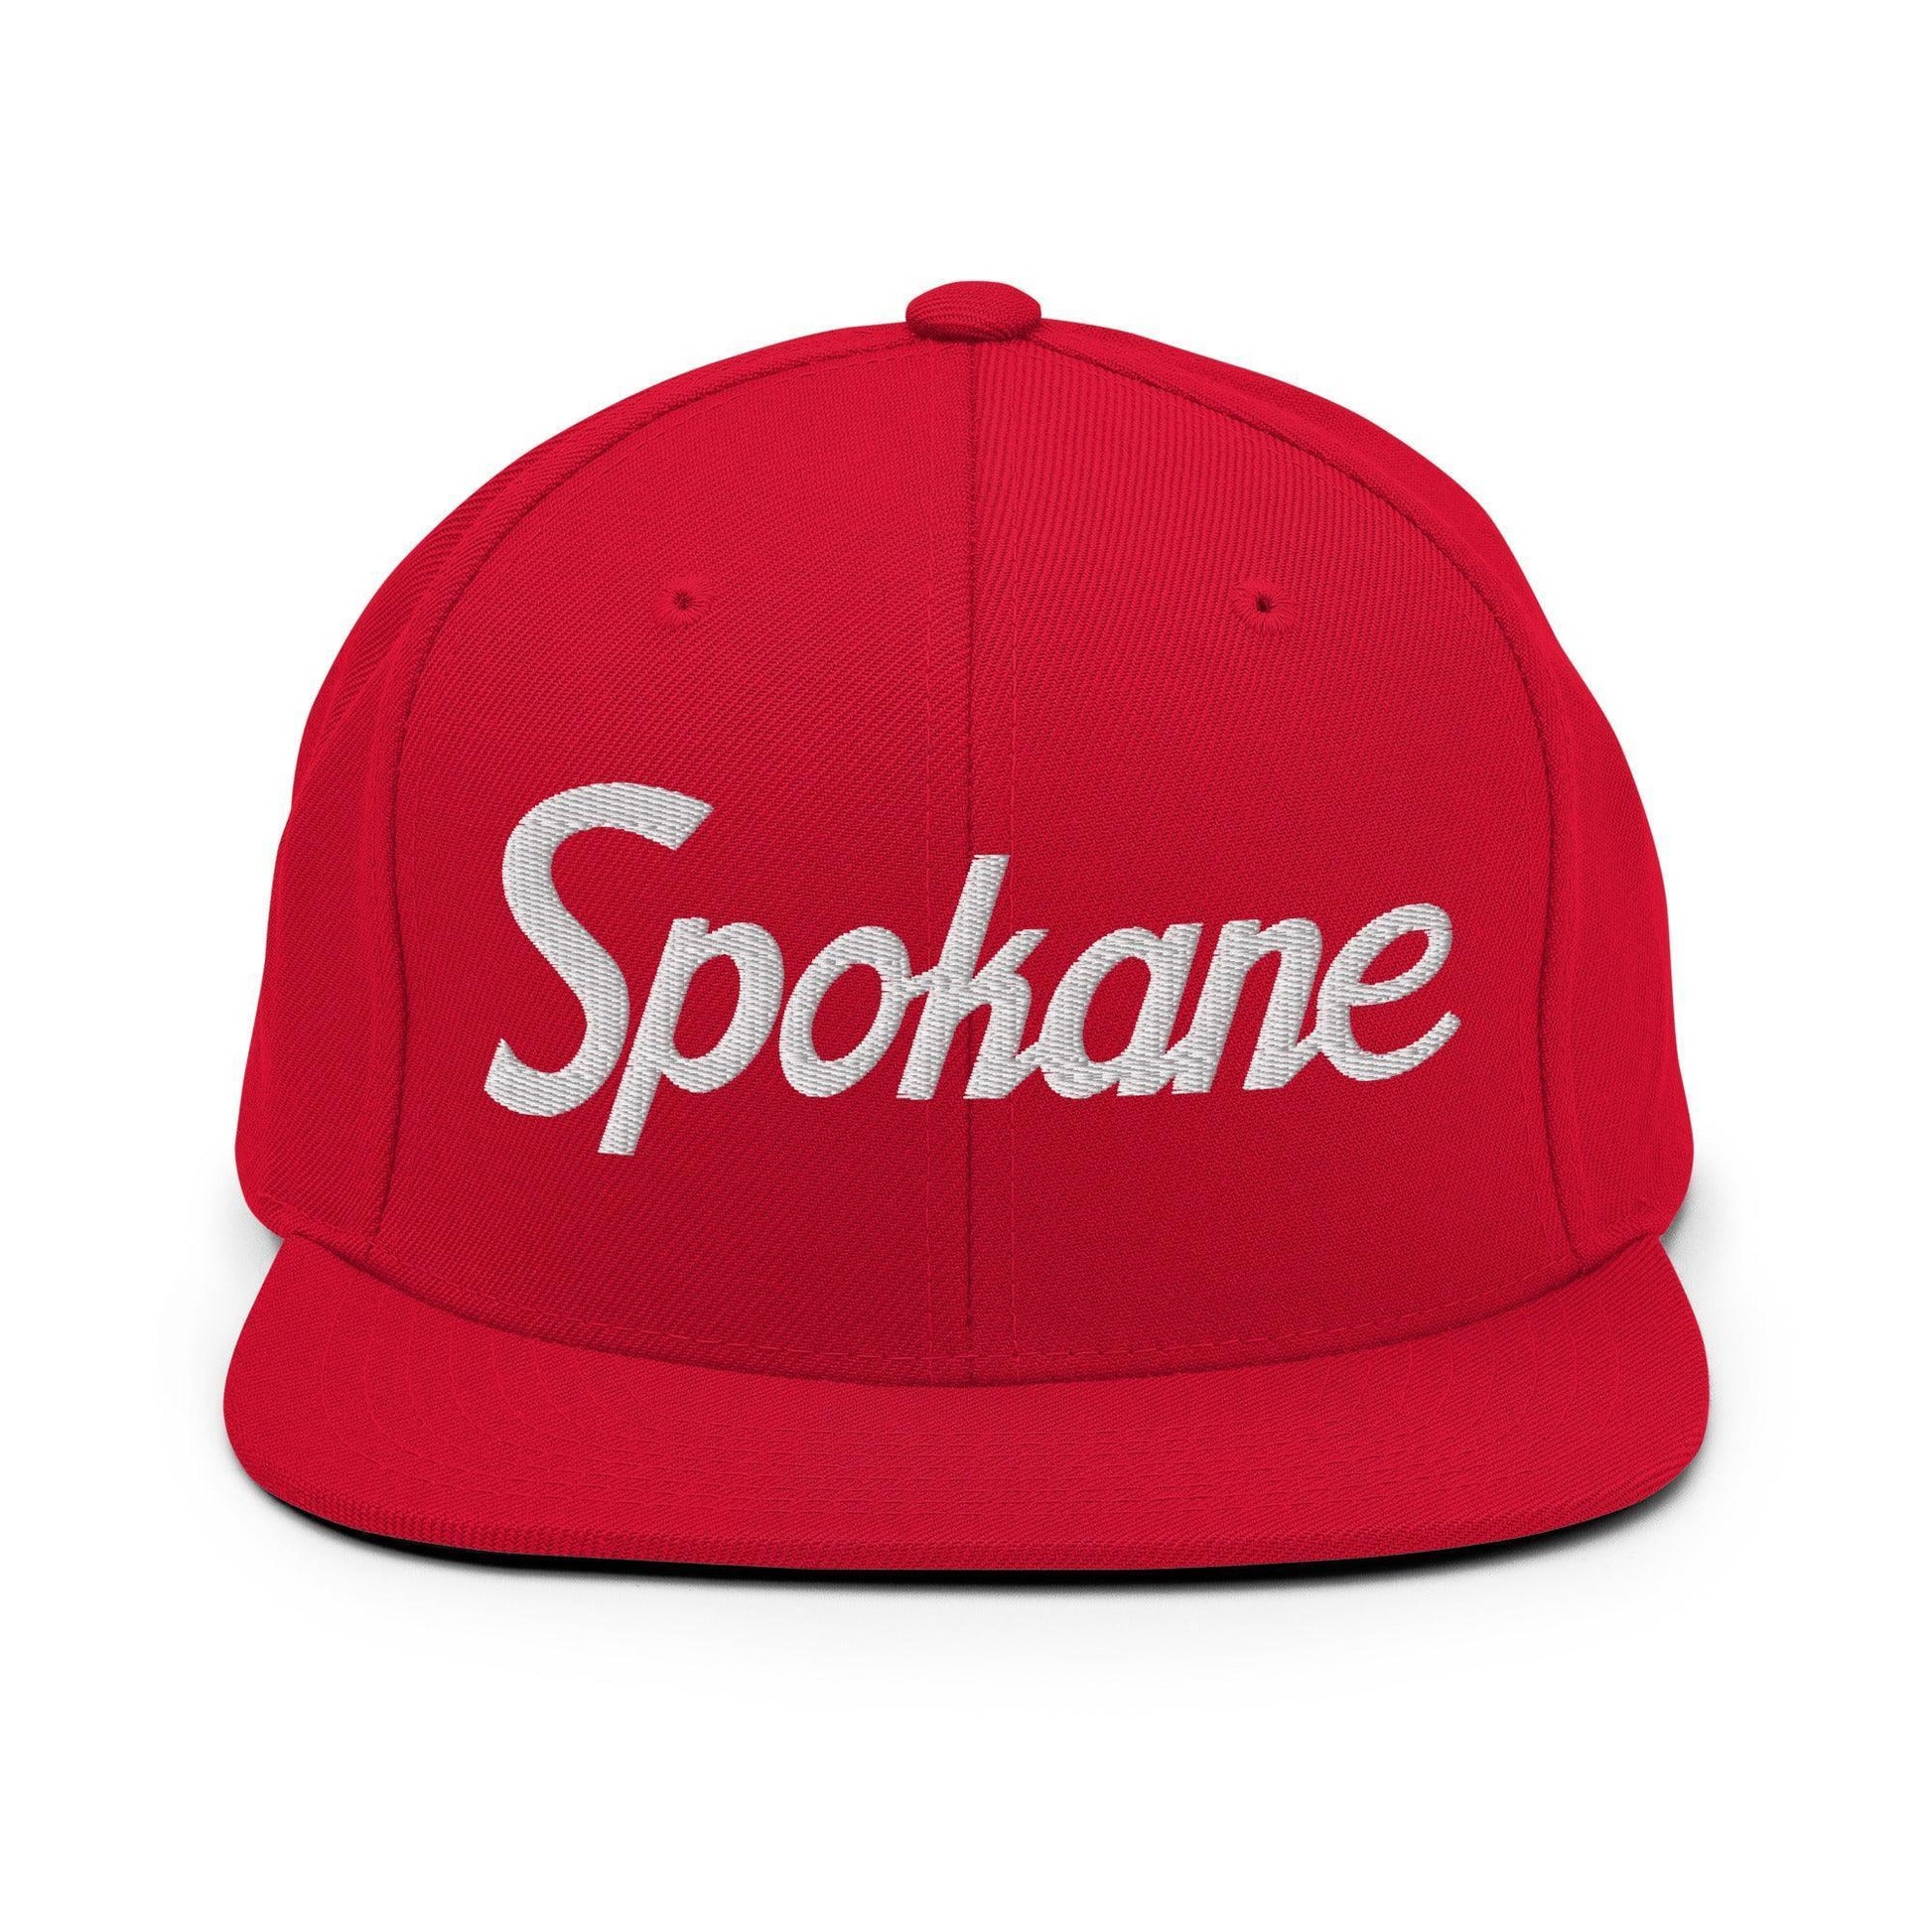 Spokane Script Snapback Hat Red